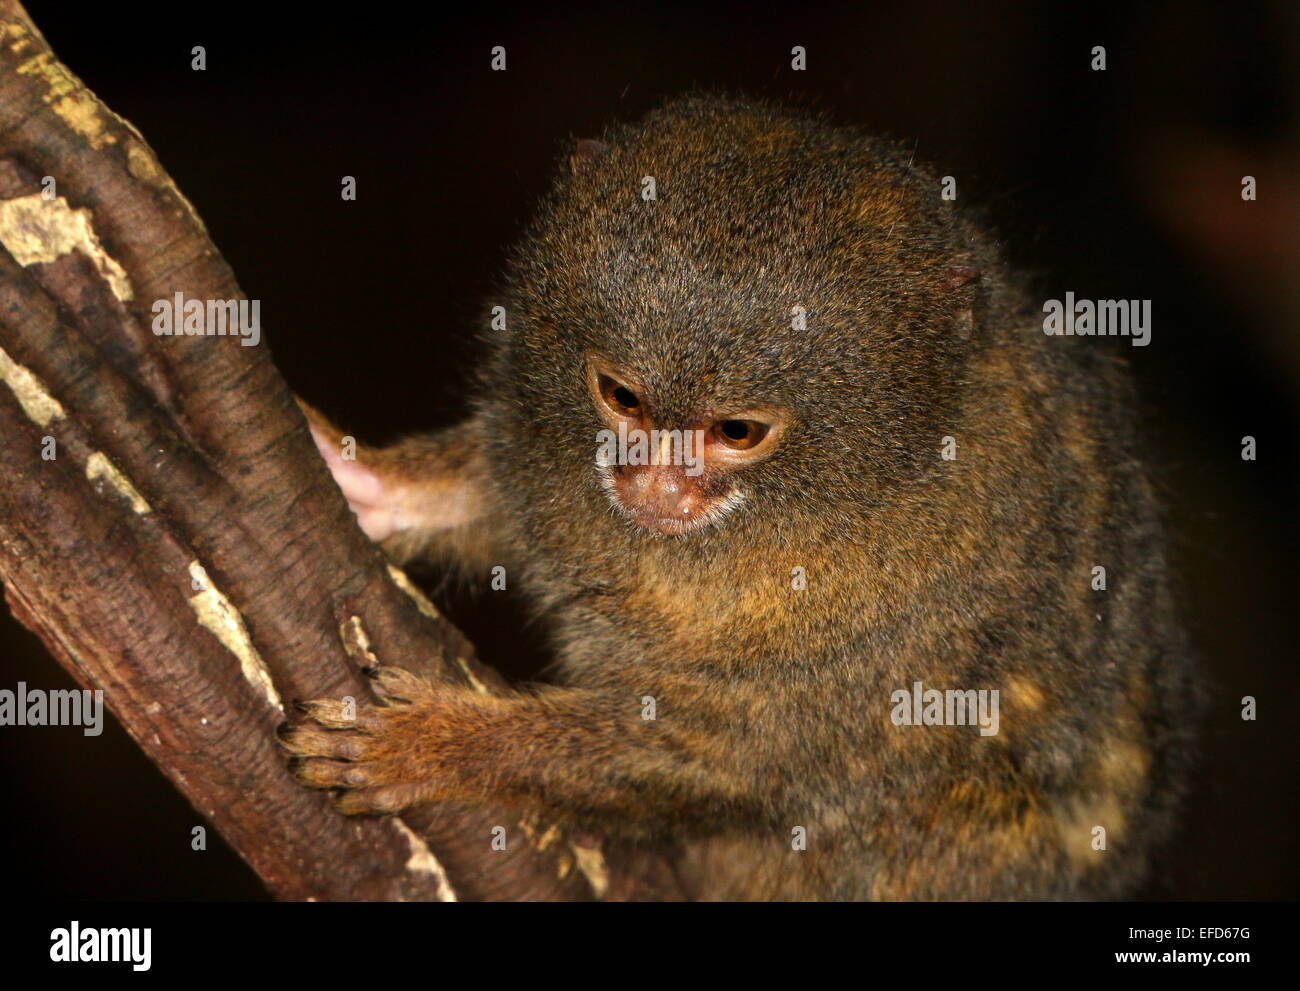 Sud Americana pigmeo (marmoset Callithrix pygmaea, Cebuella pygmaea) aggrappandosi ad un albero Foto Stock